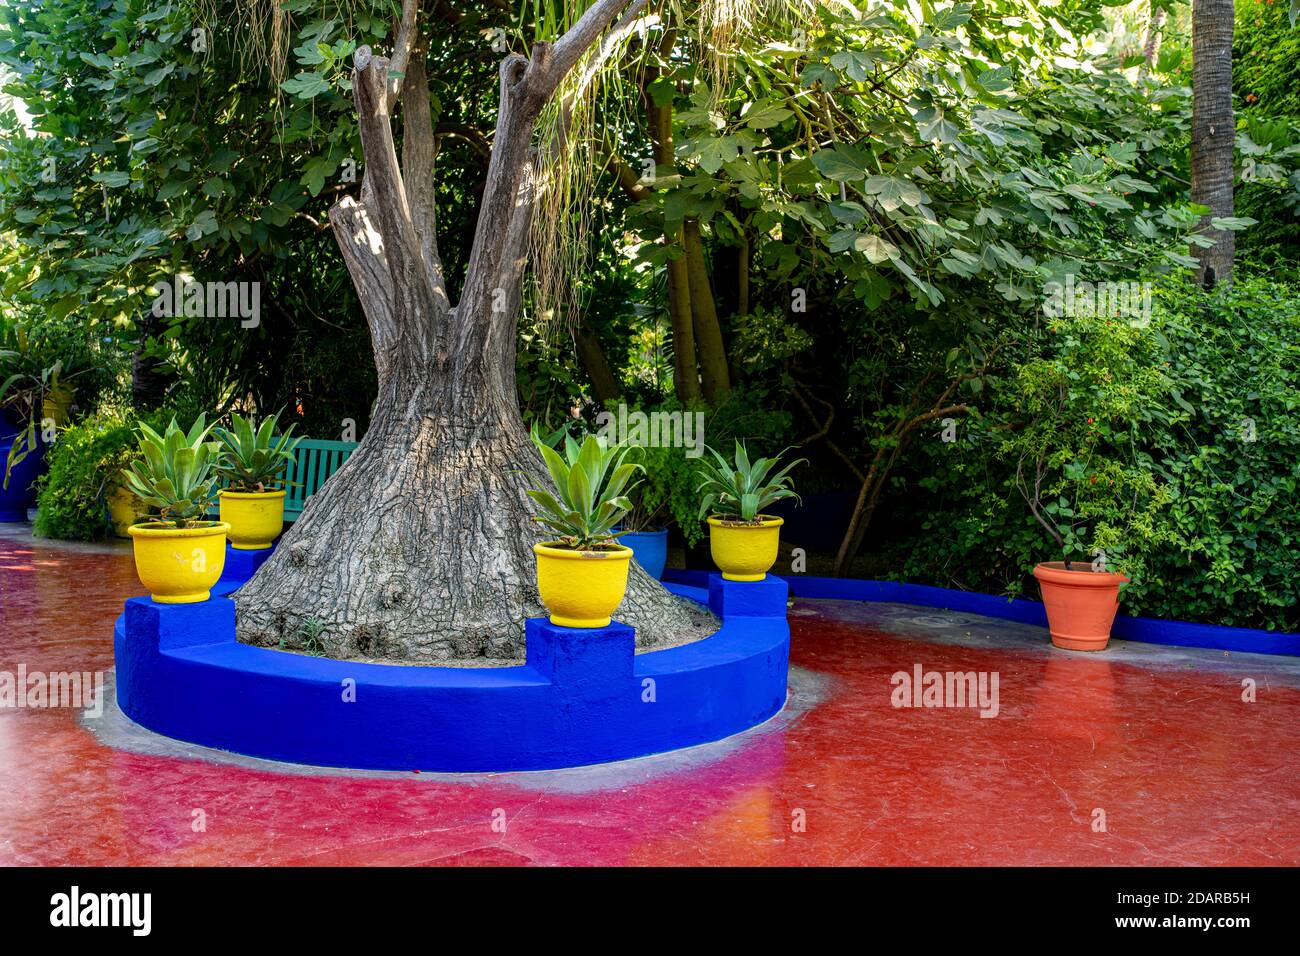 Detail, Jardin Majorelle mit blauem Haus von Yves Saint-Laurent, Botanischer Garten, Marrakesch, Marokko Stockfoto